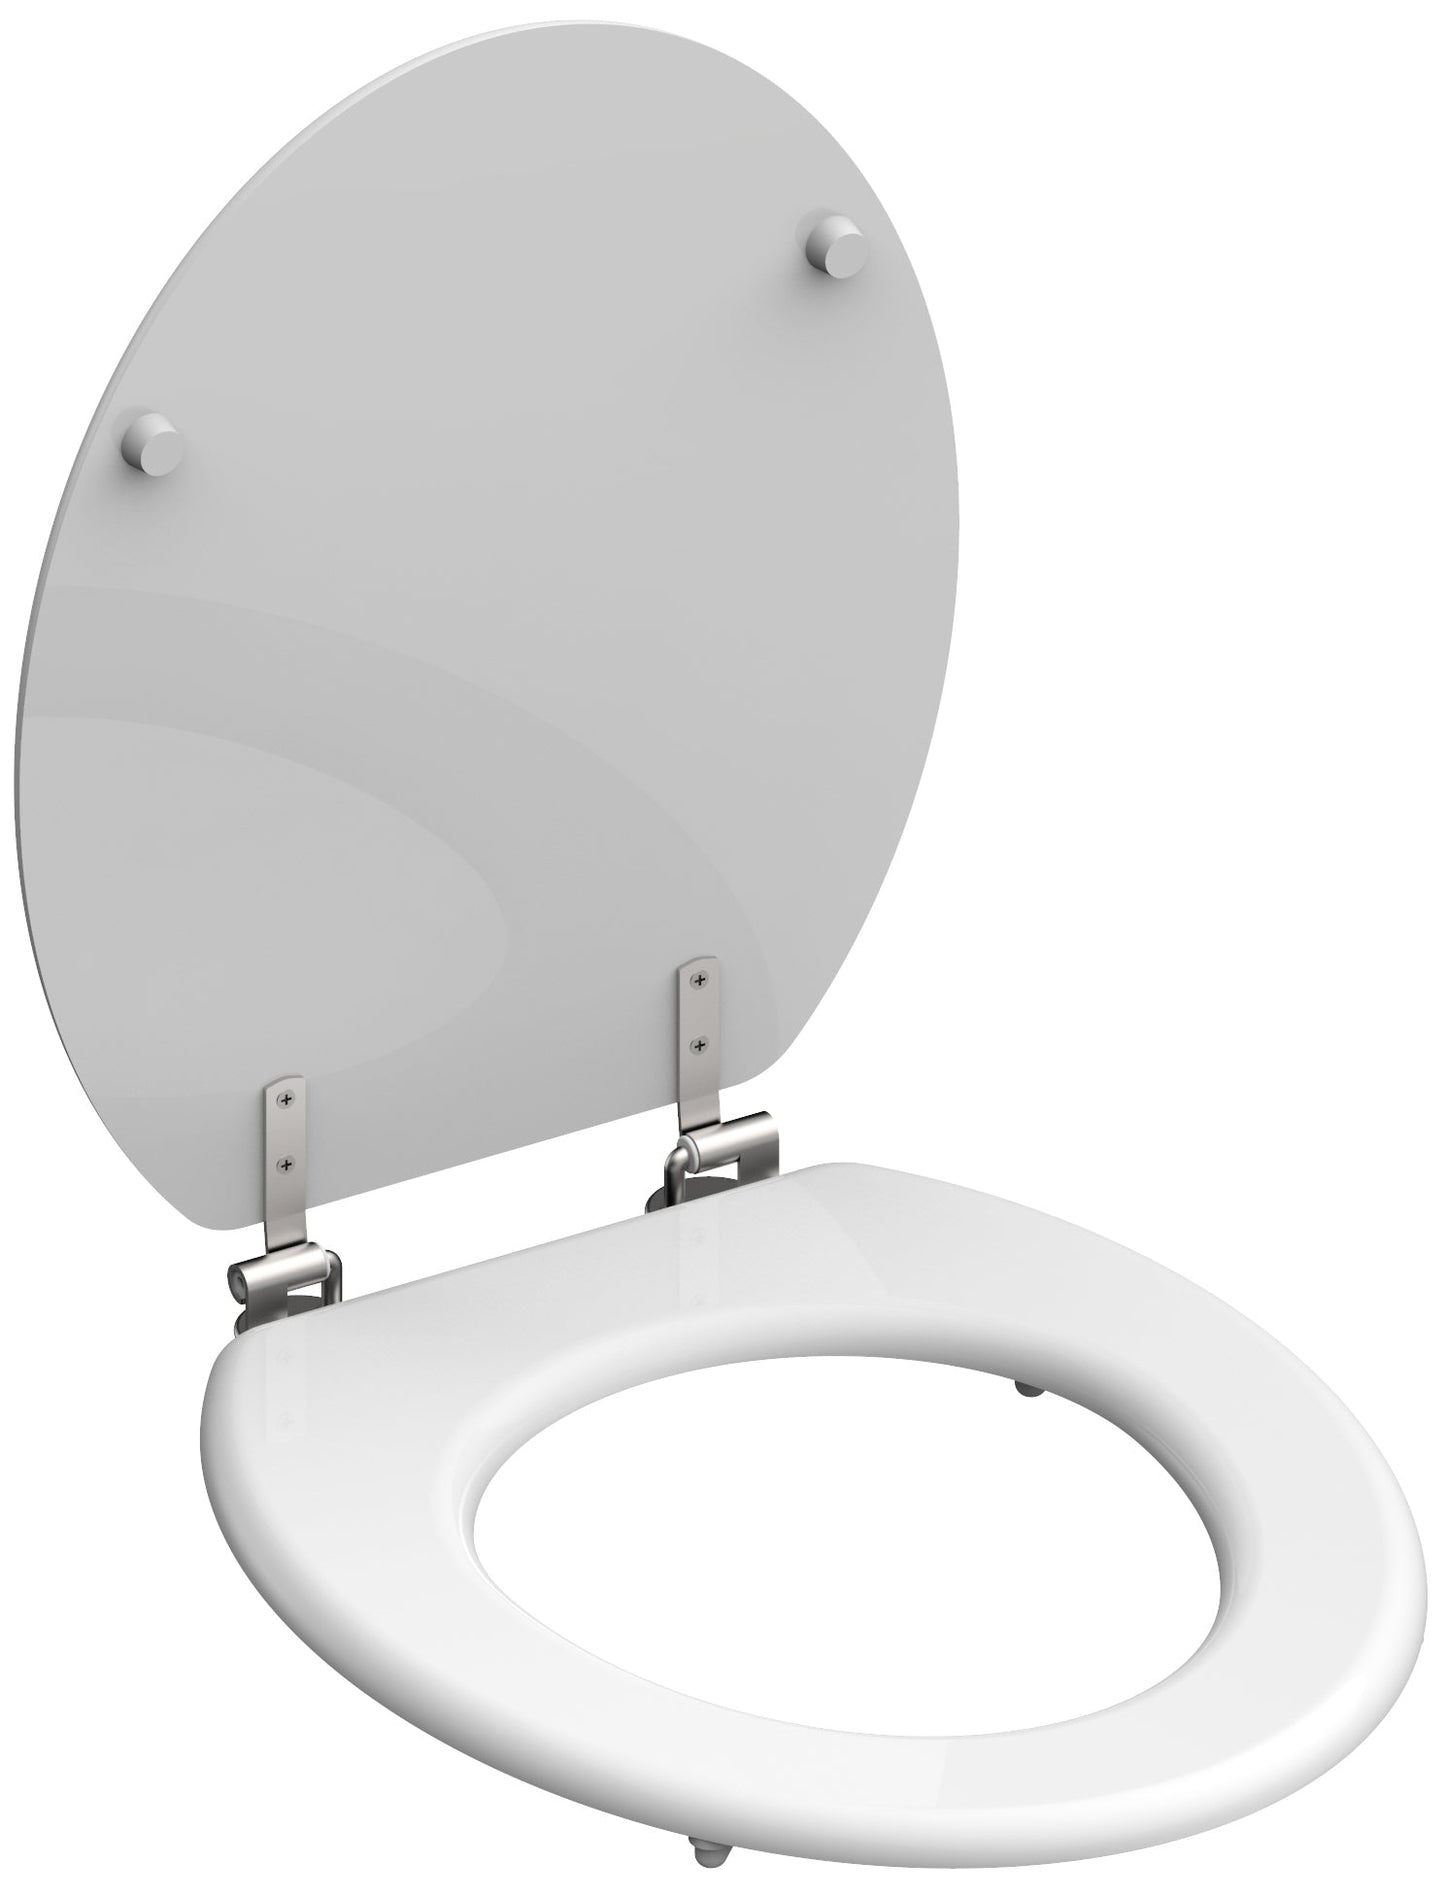 Vit toalettsits universal med träkärna - BRA. CC-mått: 130-180mm Längd: 440mm Bredd: 380mm.